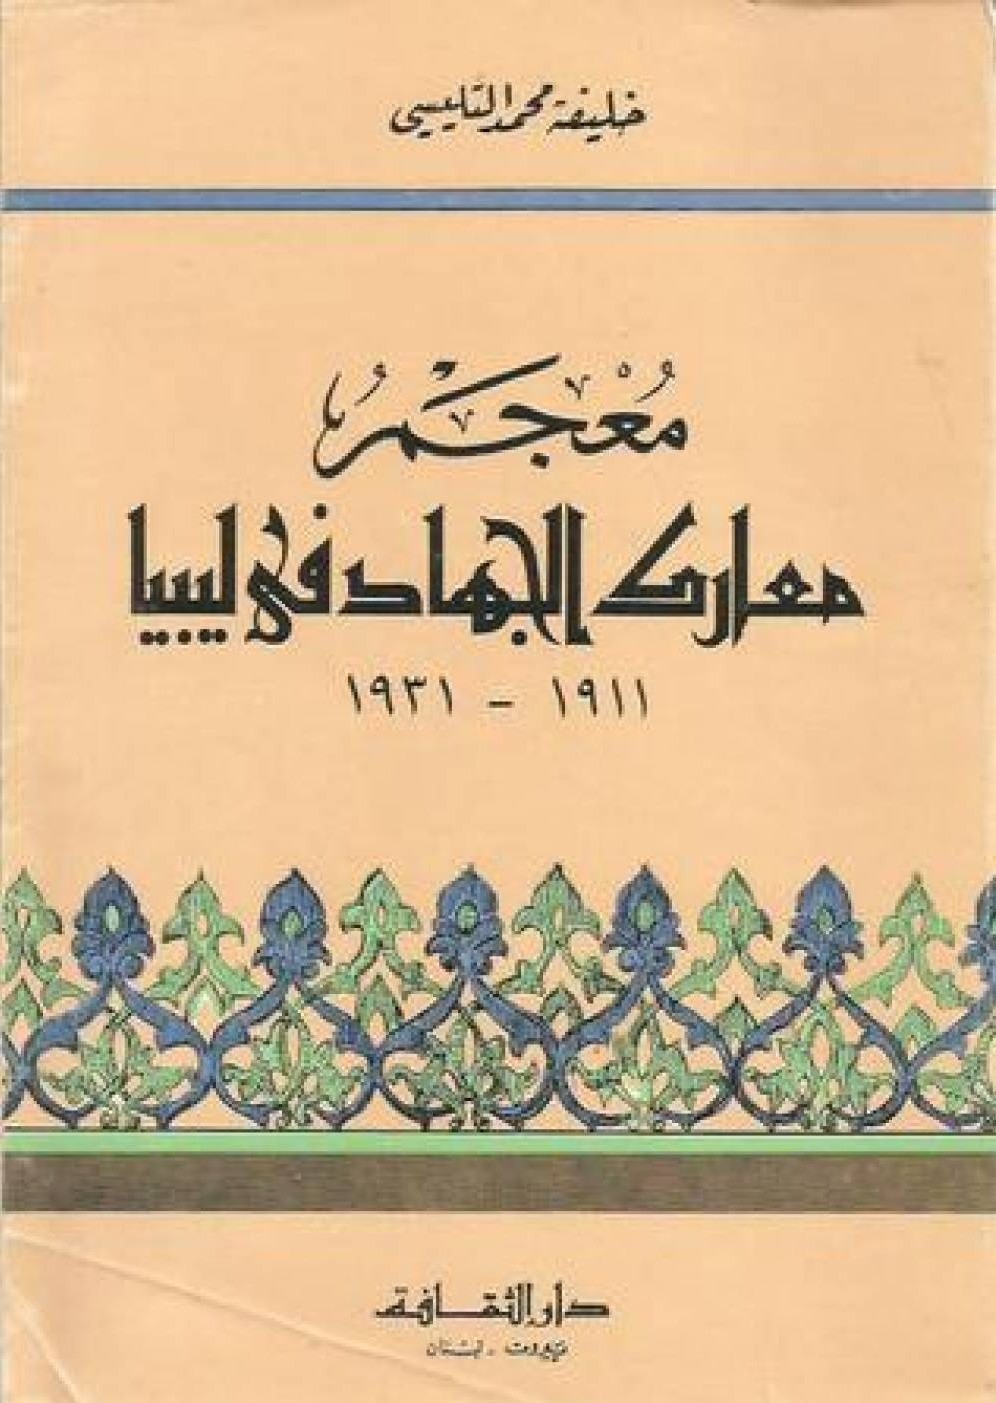 معجم معارك الجهاد في ليبيا 1911 – 1931